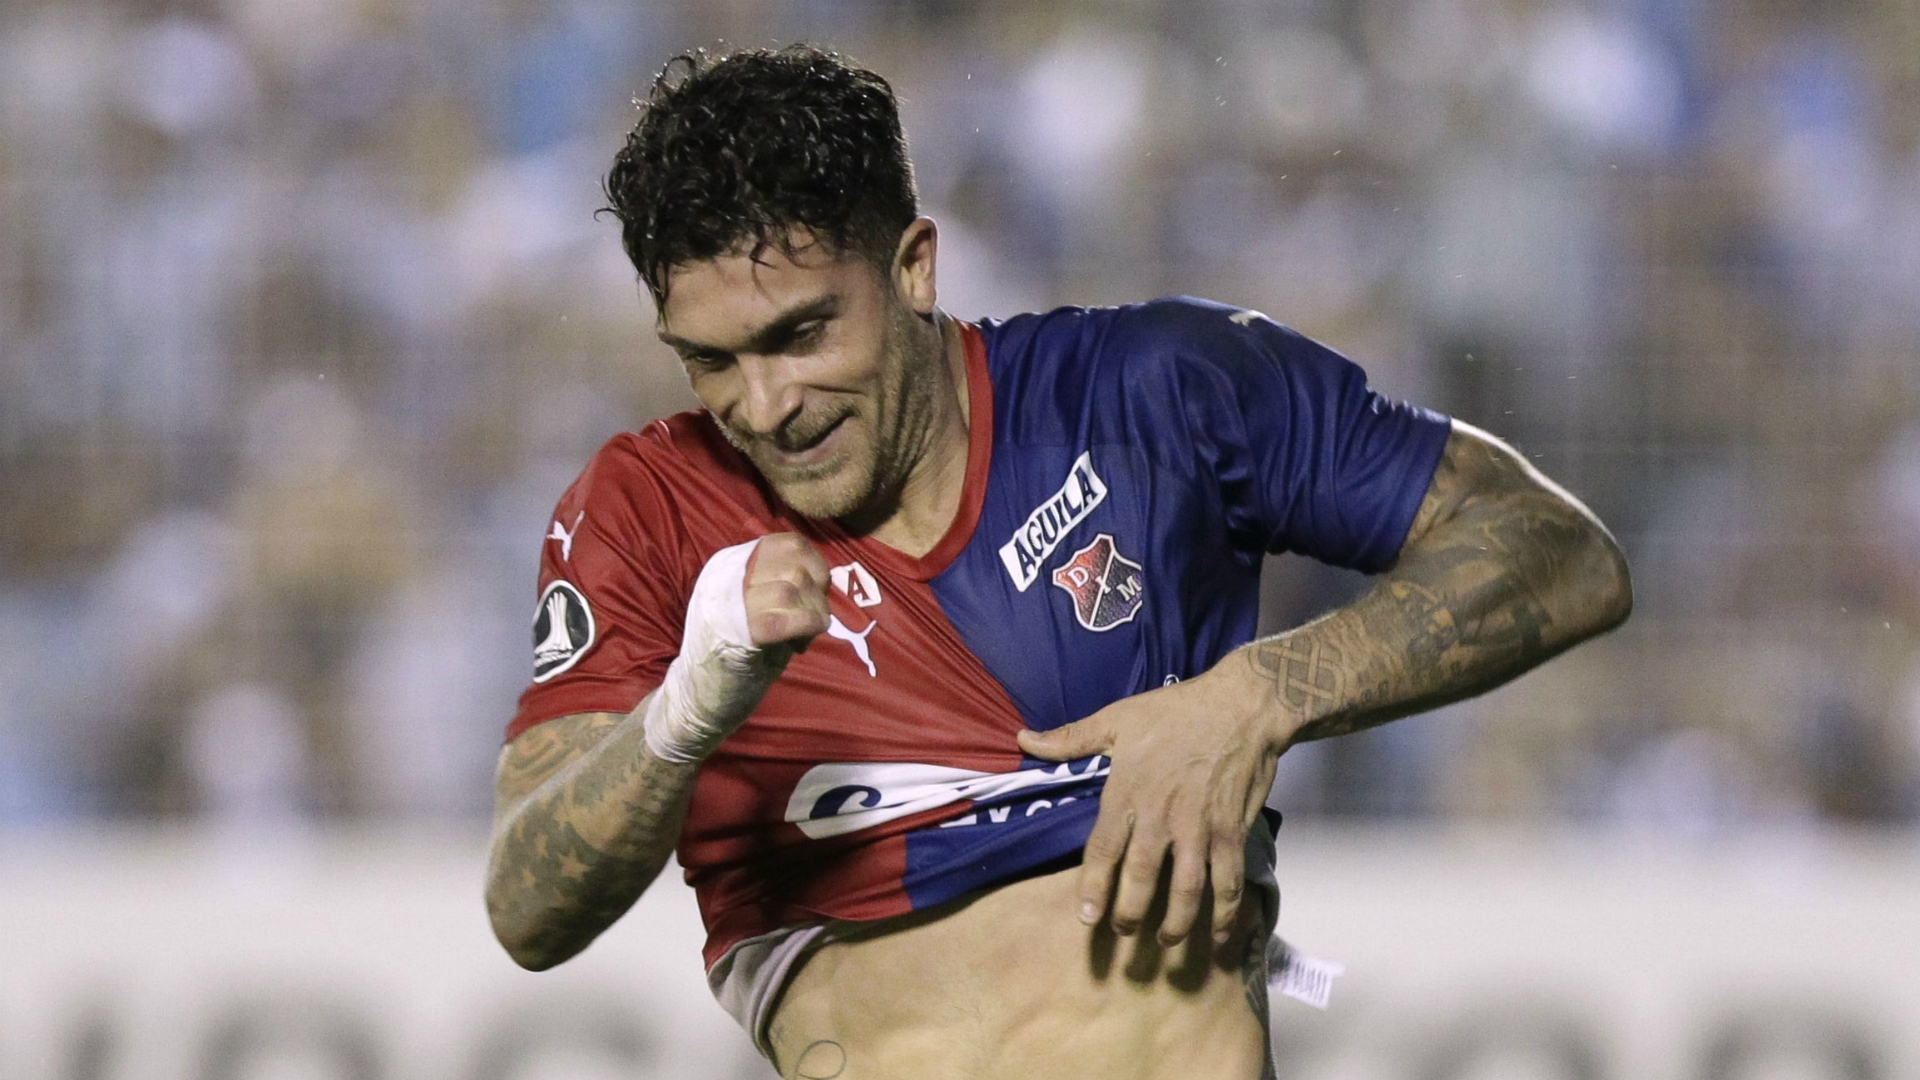 Adrián Arregui Independiente Medellín Atlético Tucumán Copa Libertadores 2020 (Getty Images)